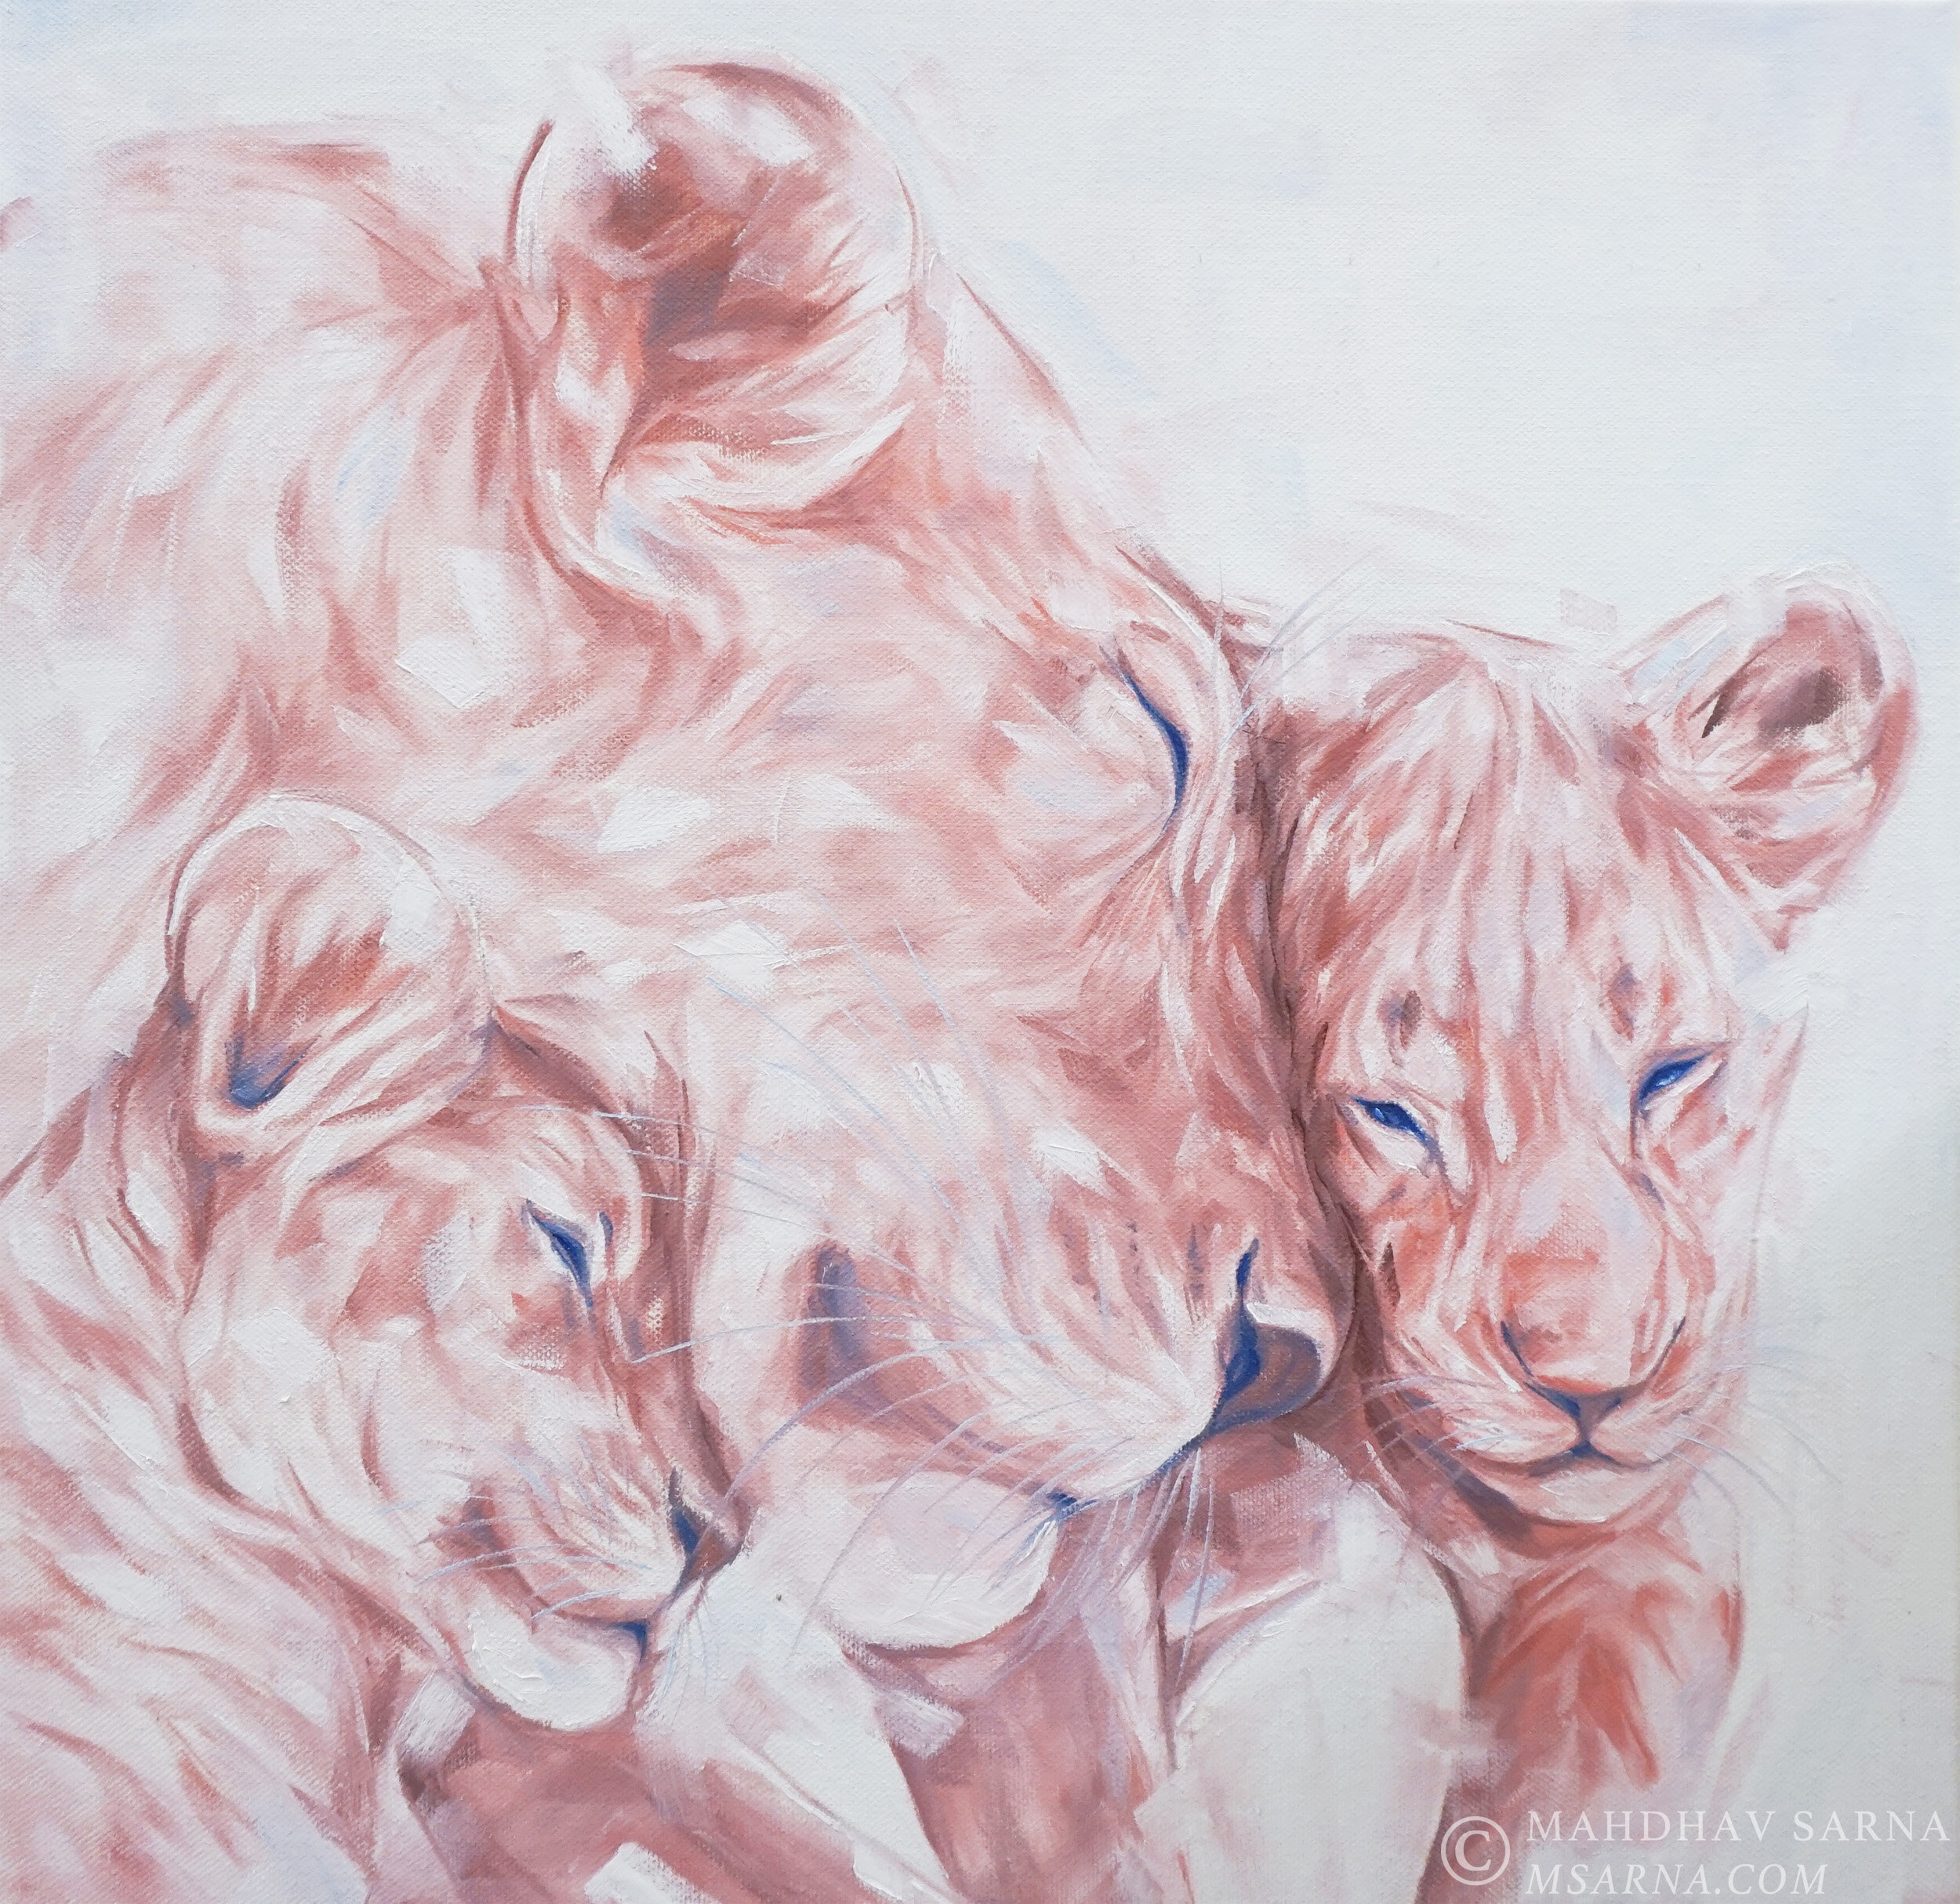 lioness cubs oil painting hphj wildlife art mahdhav sarna 01.jpg